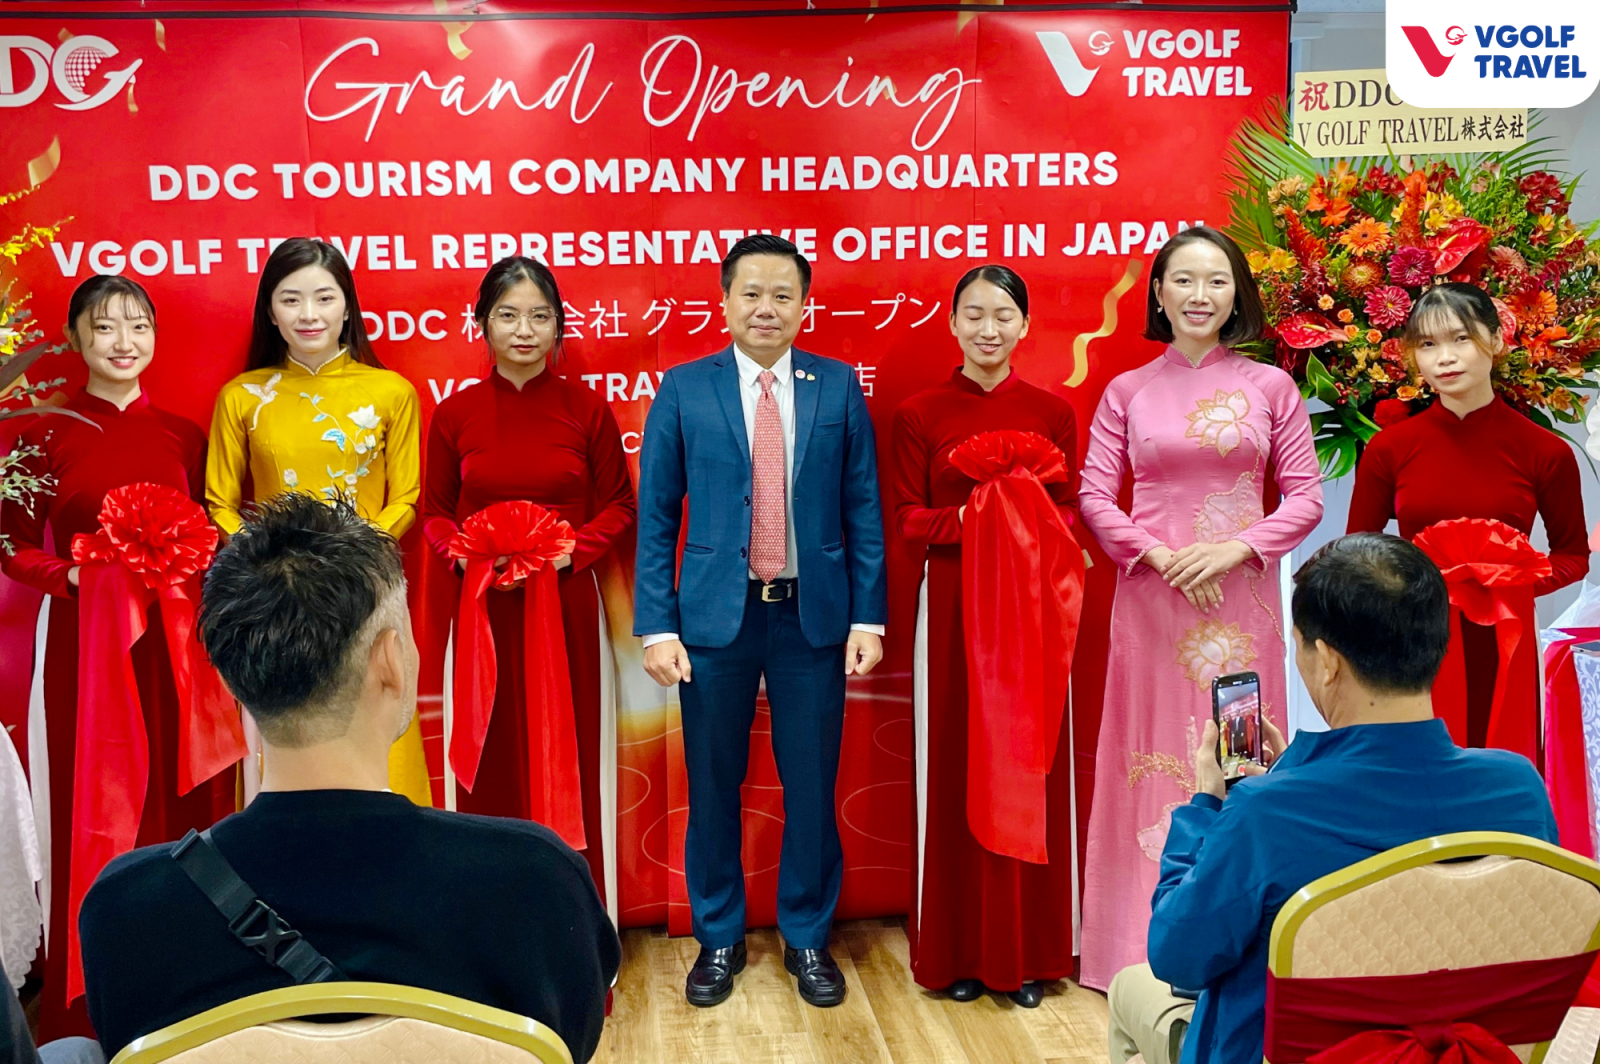 VGolf Travel khai trương văn phòng đại diện tại Nhật Bản